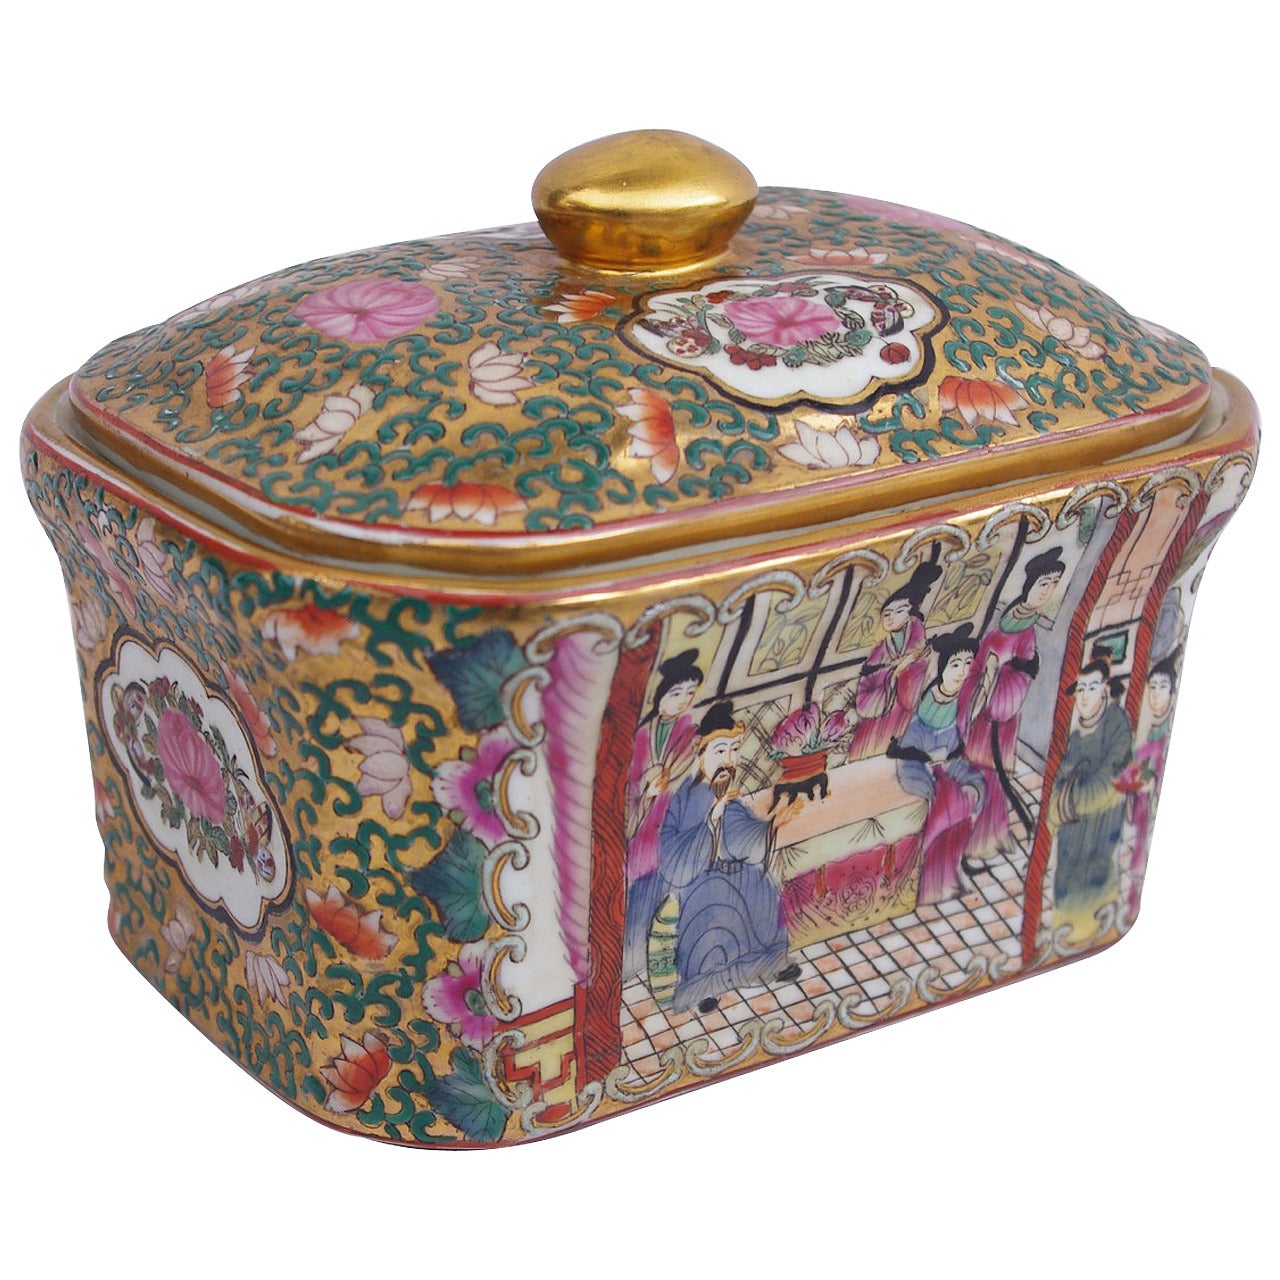 Covered Canton porcelain box, circa 1900